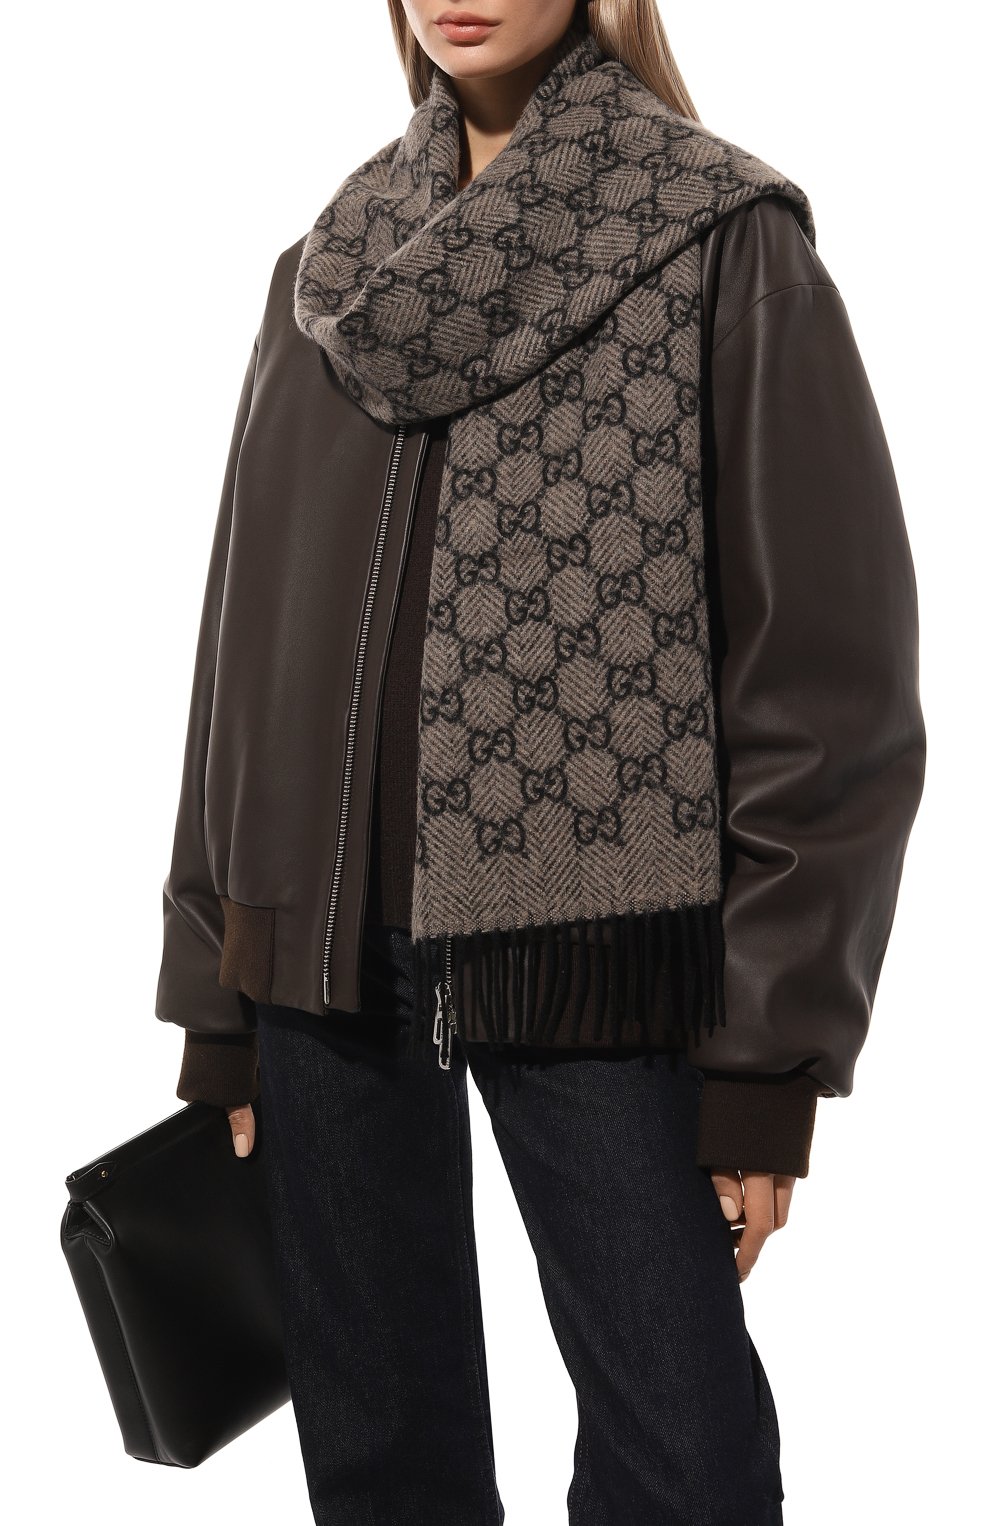 Женский кашемировый шарф GUCCI серого цвета, арт. 676619 3G344 | Фото 2 (Материал: Текстиль, Кашемир, Шерсть)